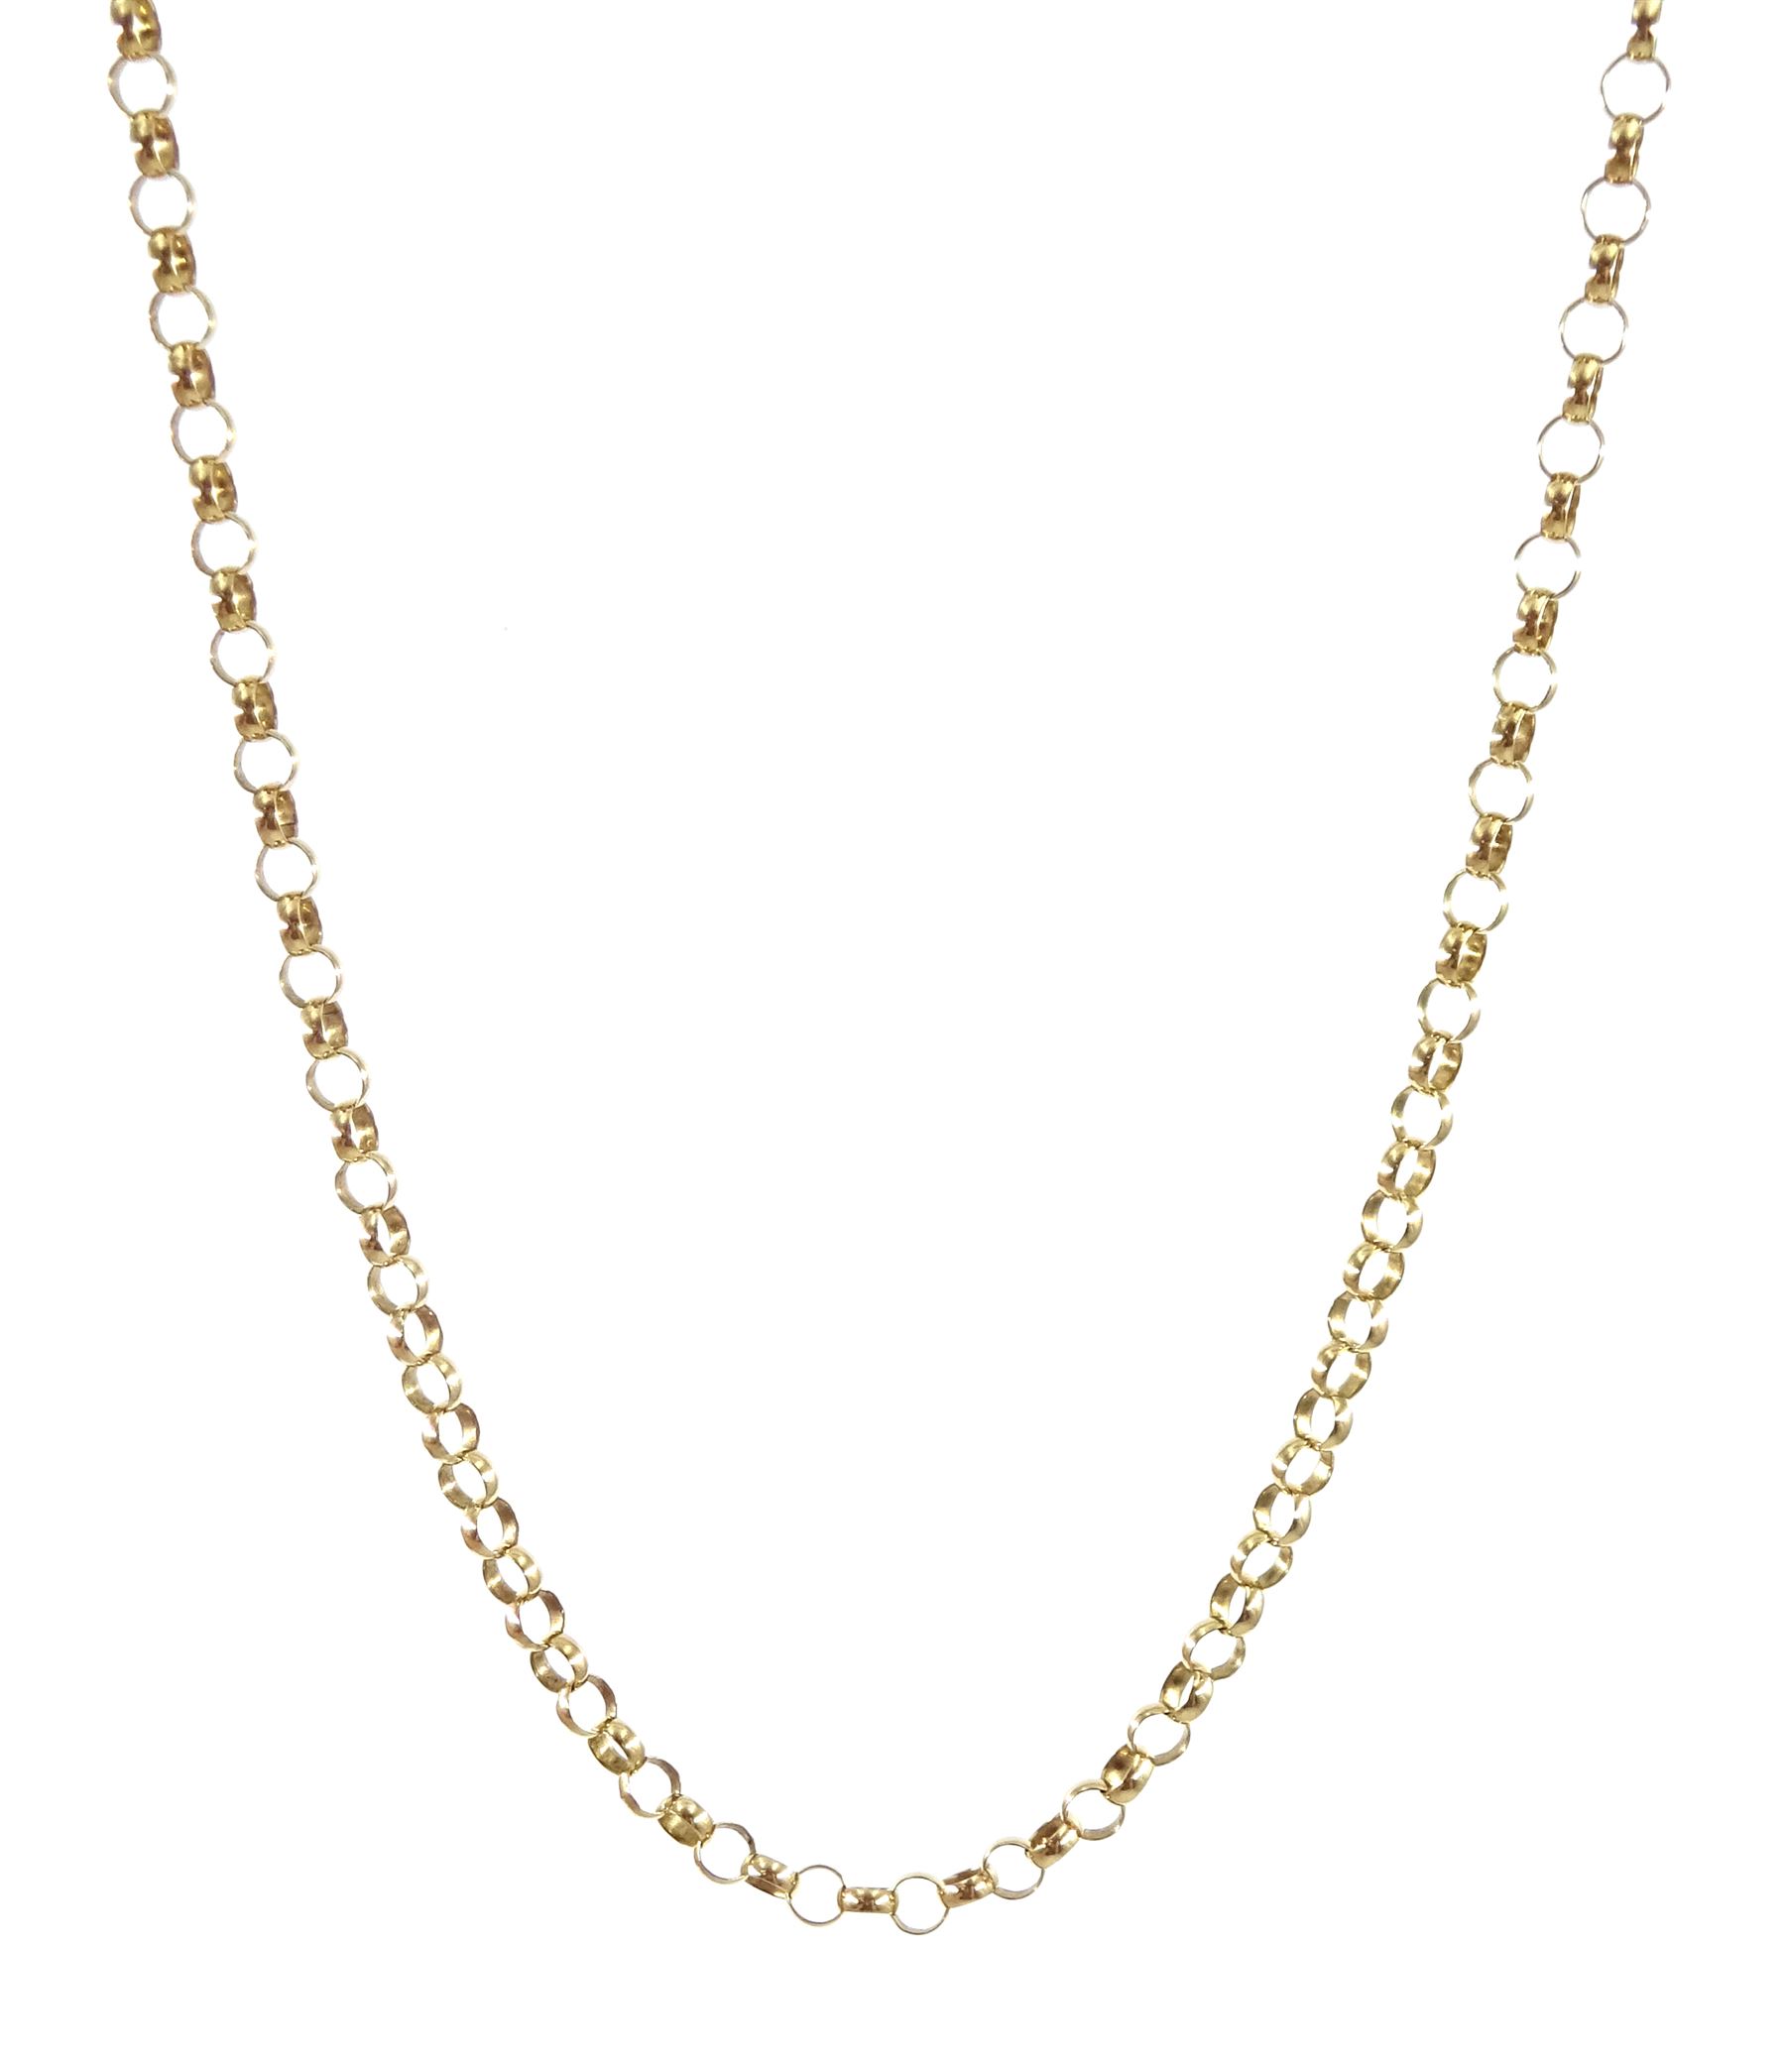 9ct gold belcher link necklace